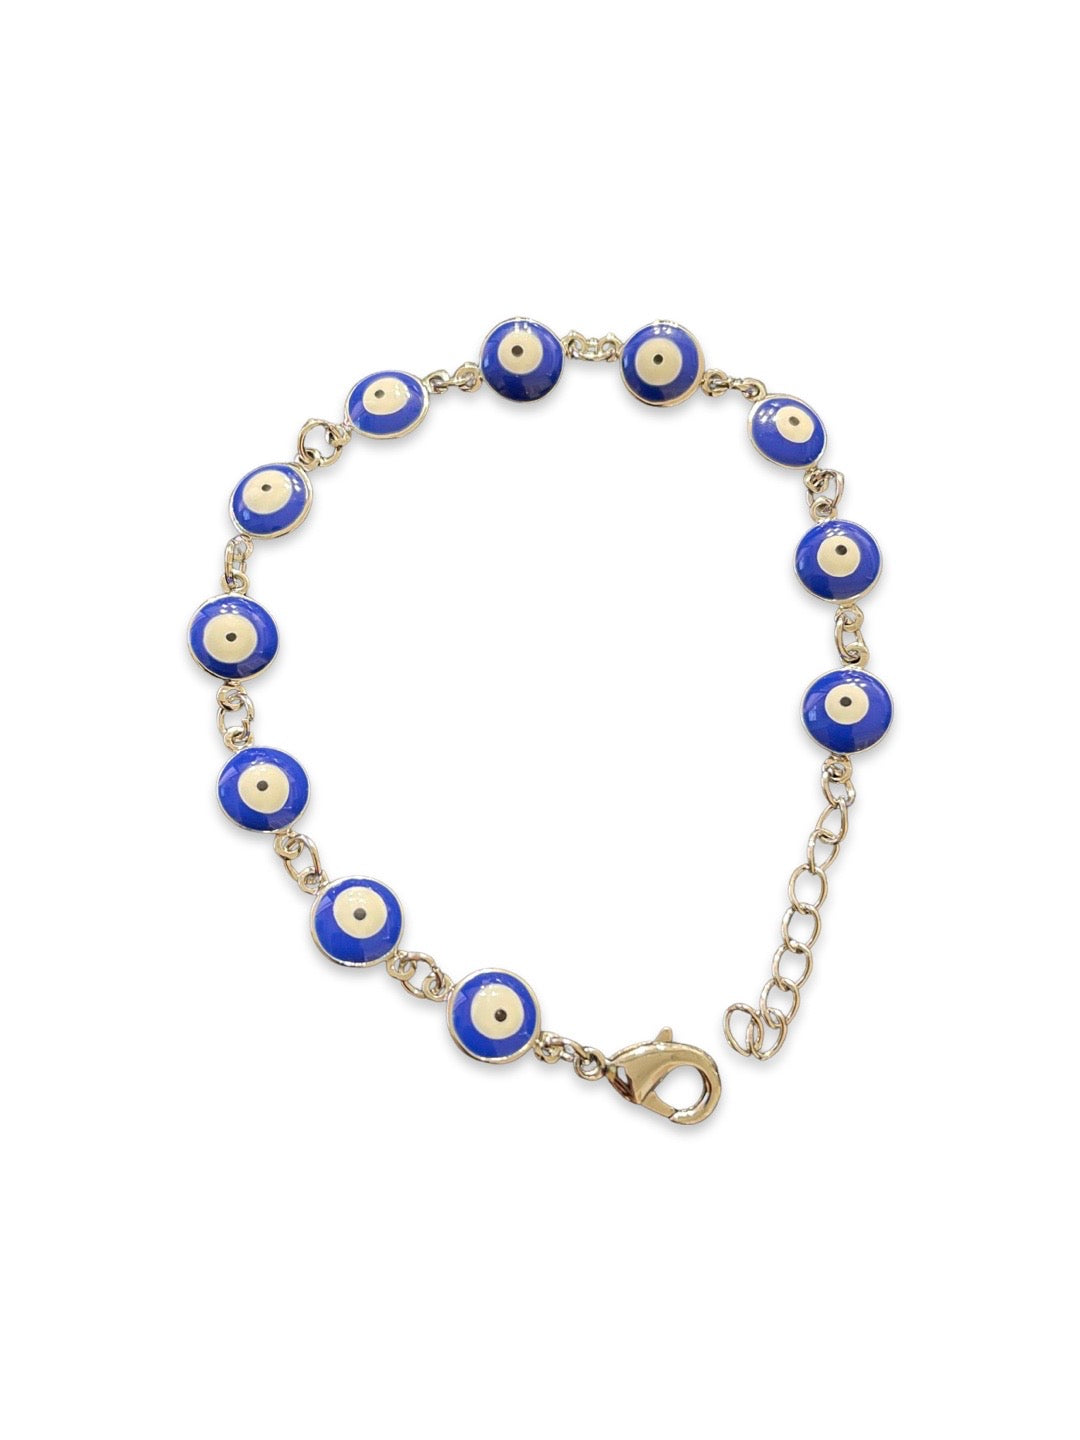 Latest Blue Evil Eye Design Silver Plated Adjustable Wrist Bracelet